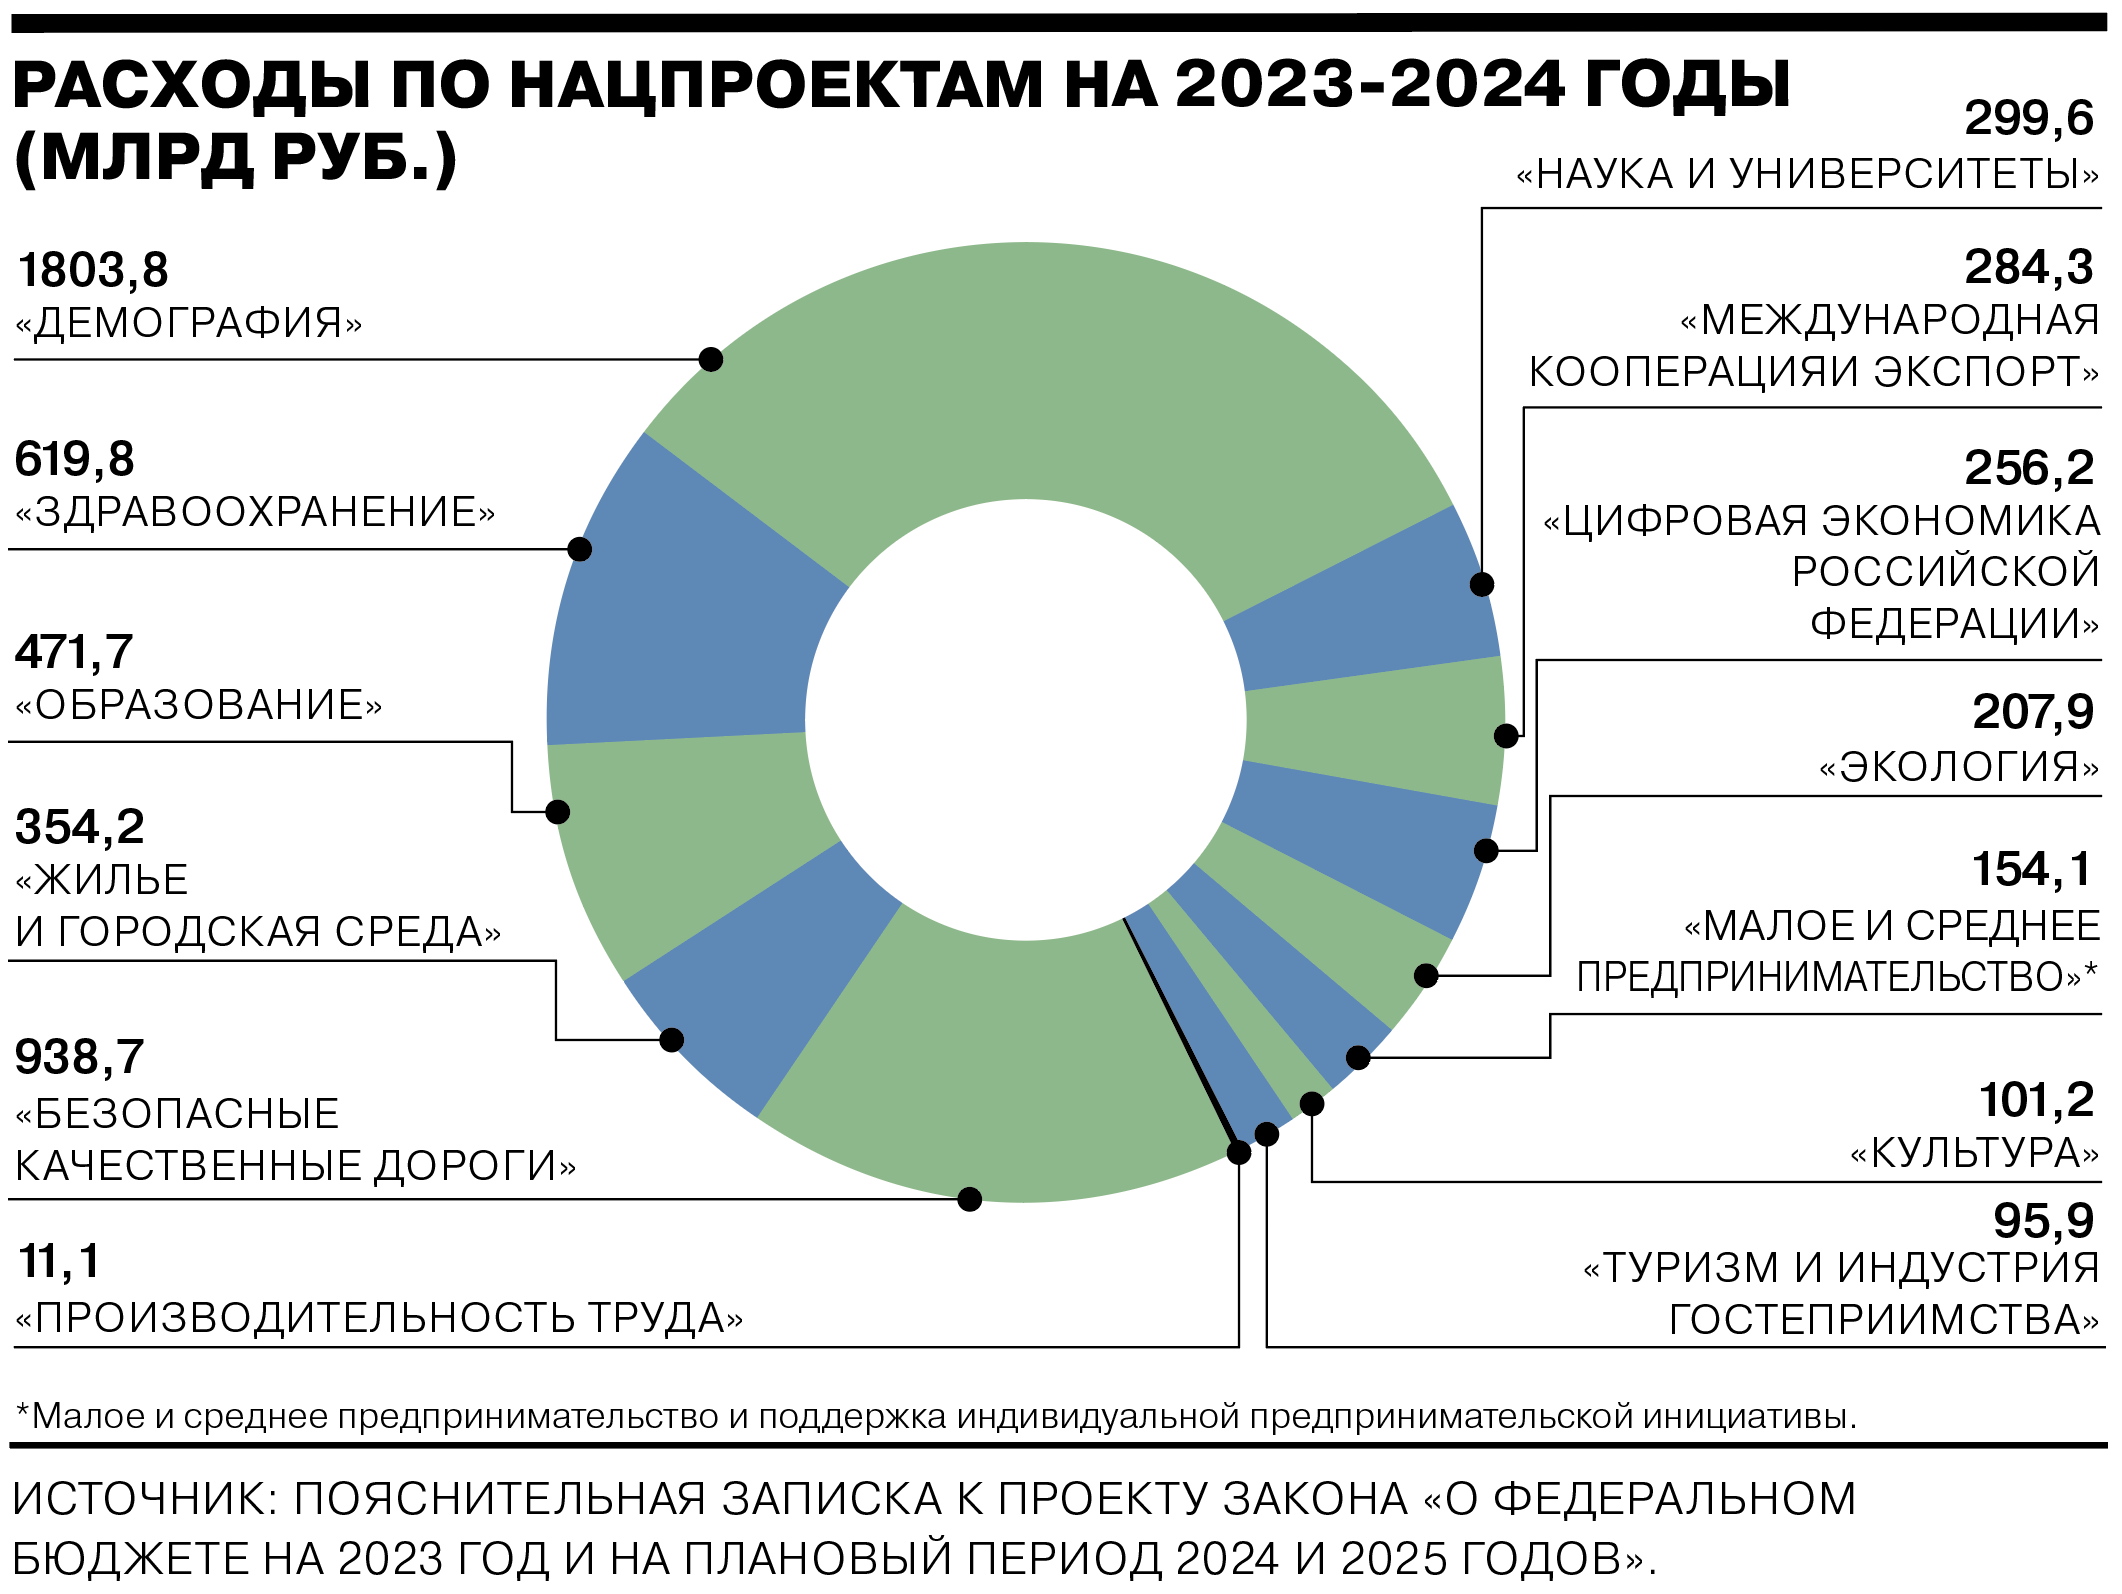 Как жить в россии в 2024 году. Бюджет России на 2023. Бюджет РФ на 2023. Федеральный бюджет на 2023 год. Бюджет на 2023 2024 и 2025 годов.